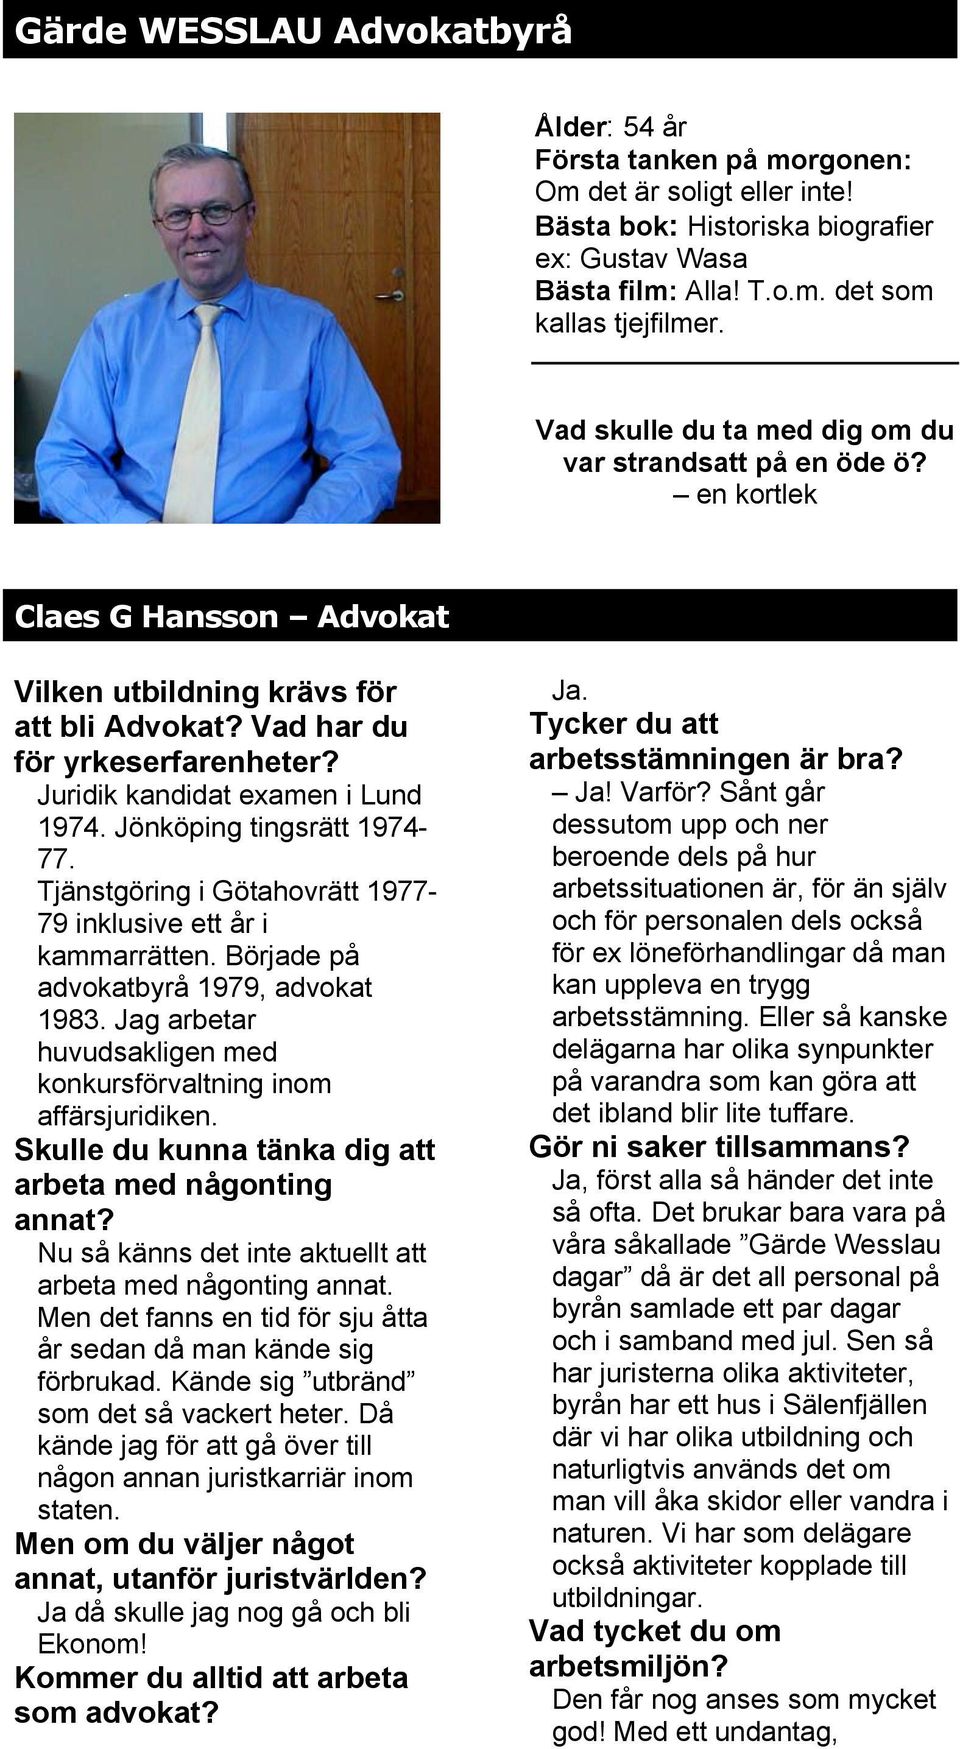 Juridik kandidat examen i Lund 1974. Jönköping tingsrätt 1974-77. Tjänstgöring i Götahovrätt 1977-79 inklusive ett år i kammarrätten. Började på advokatbyrå 1979, advokat 1983.